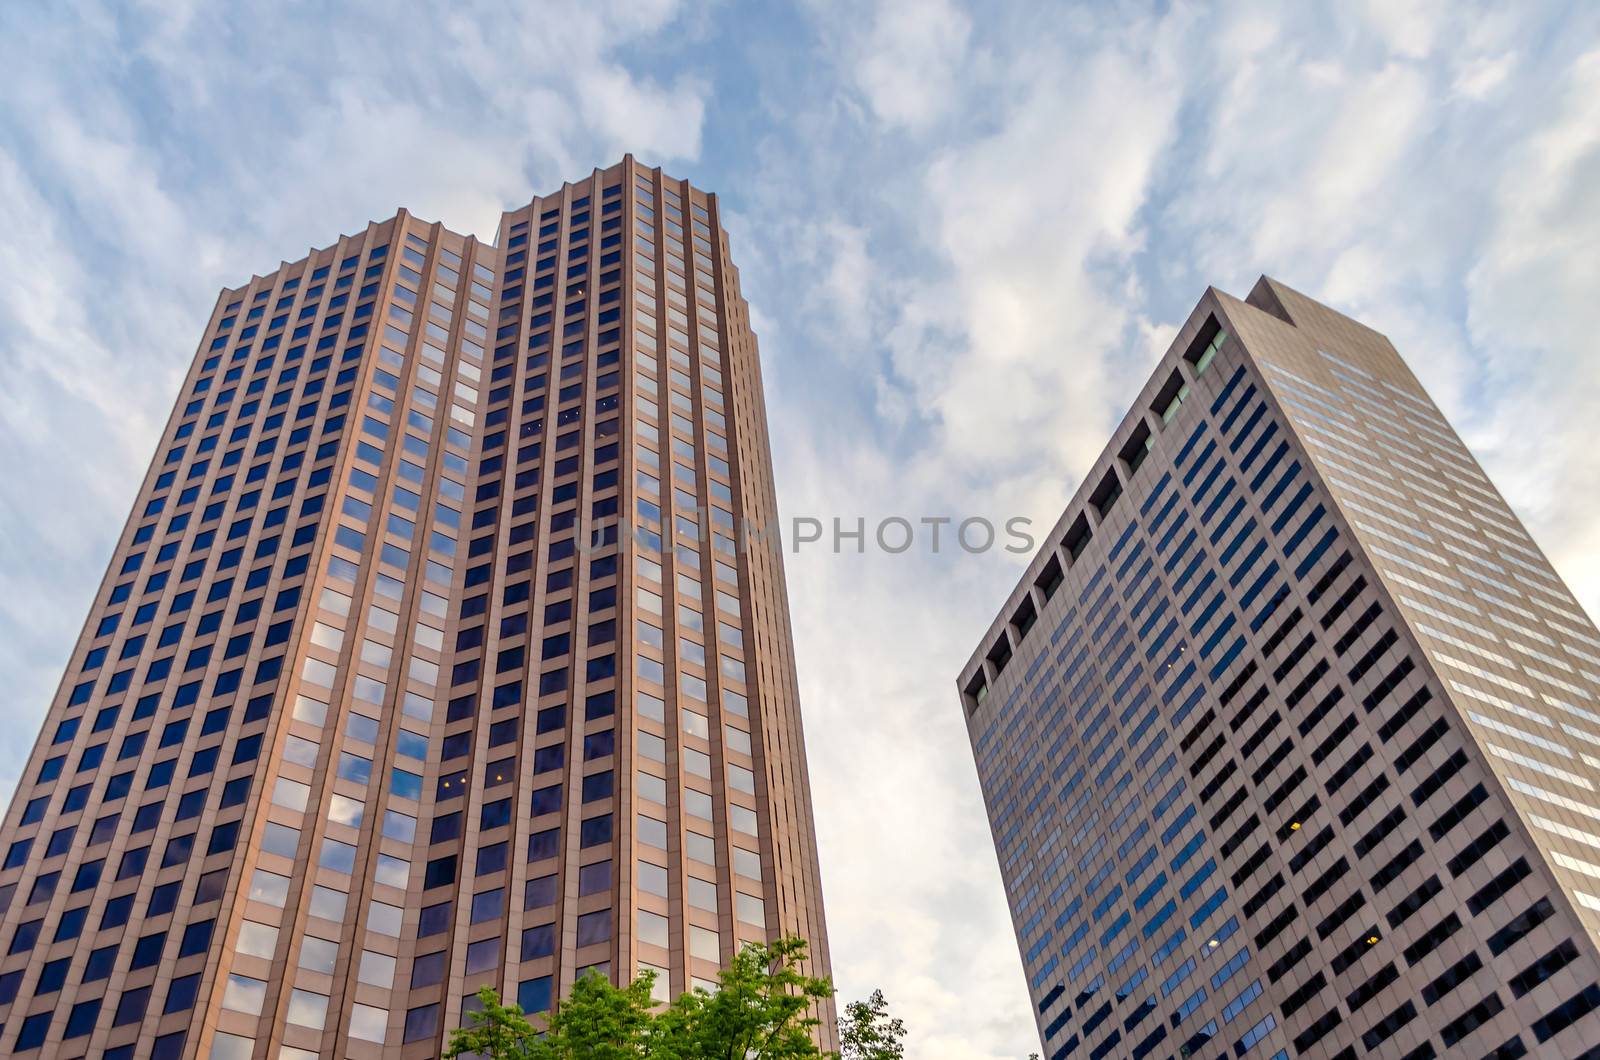 Skyscrapers, modern architecture in central Boston, USA